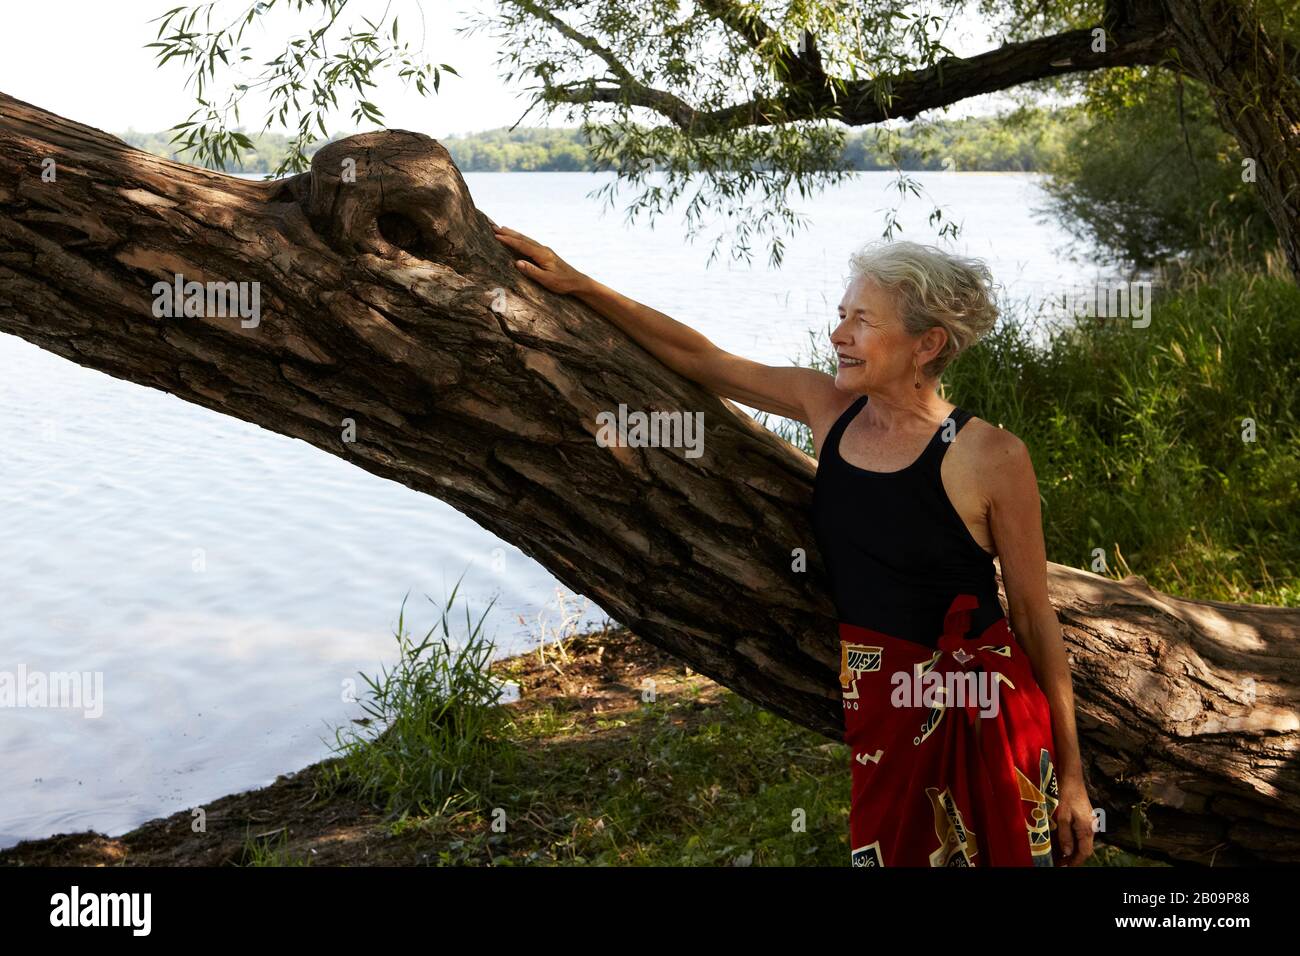 beautiful 65 year old woman swimming in lake Stock Photo